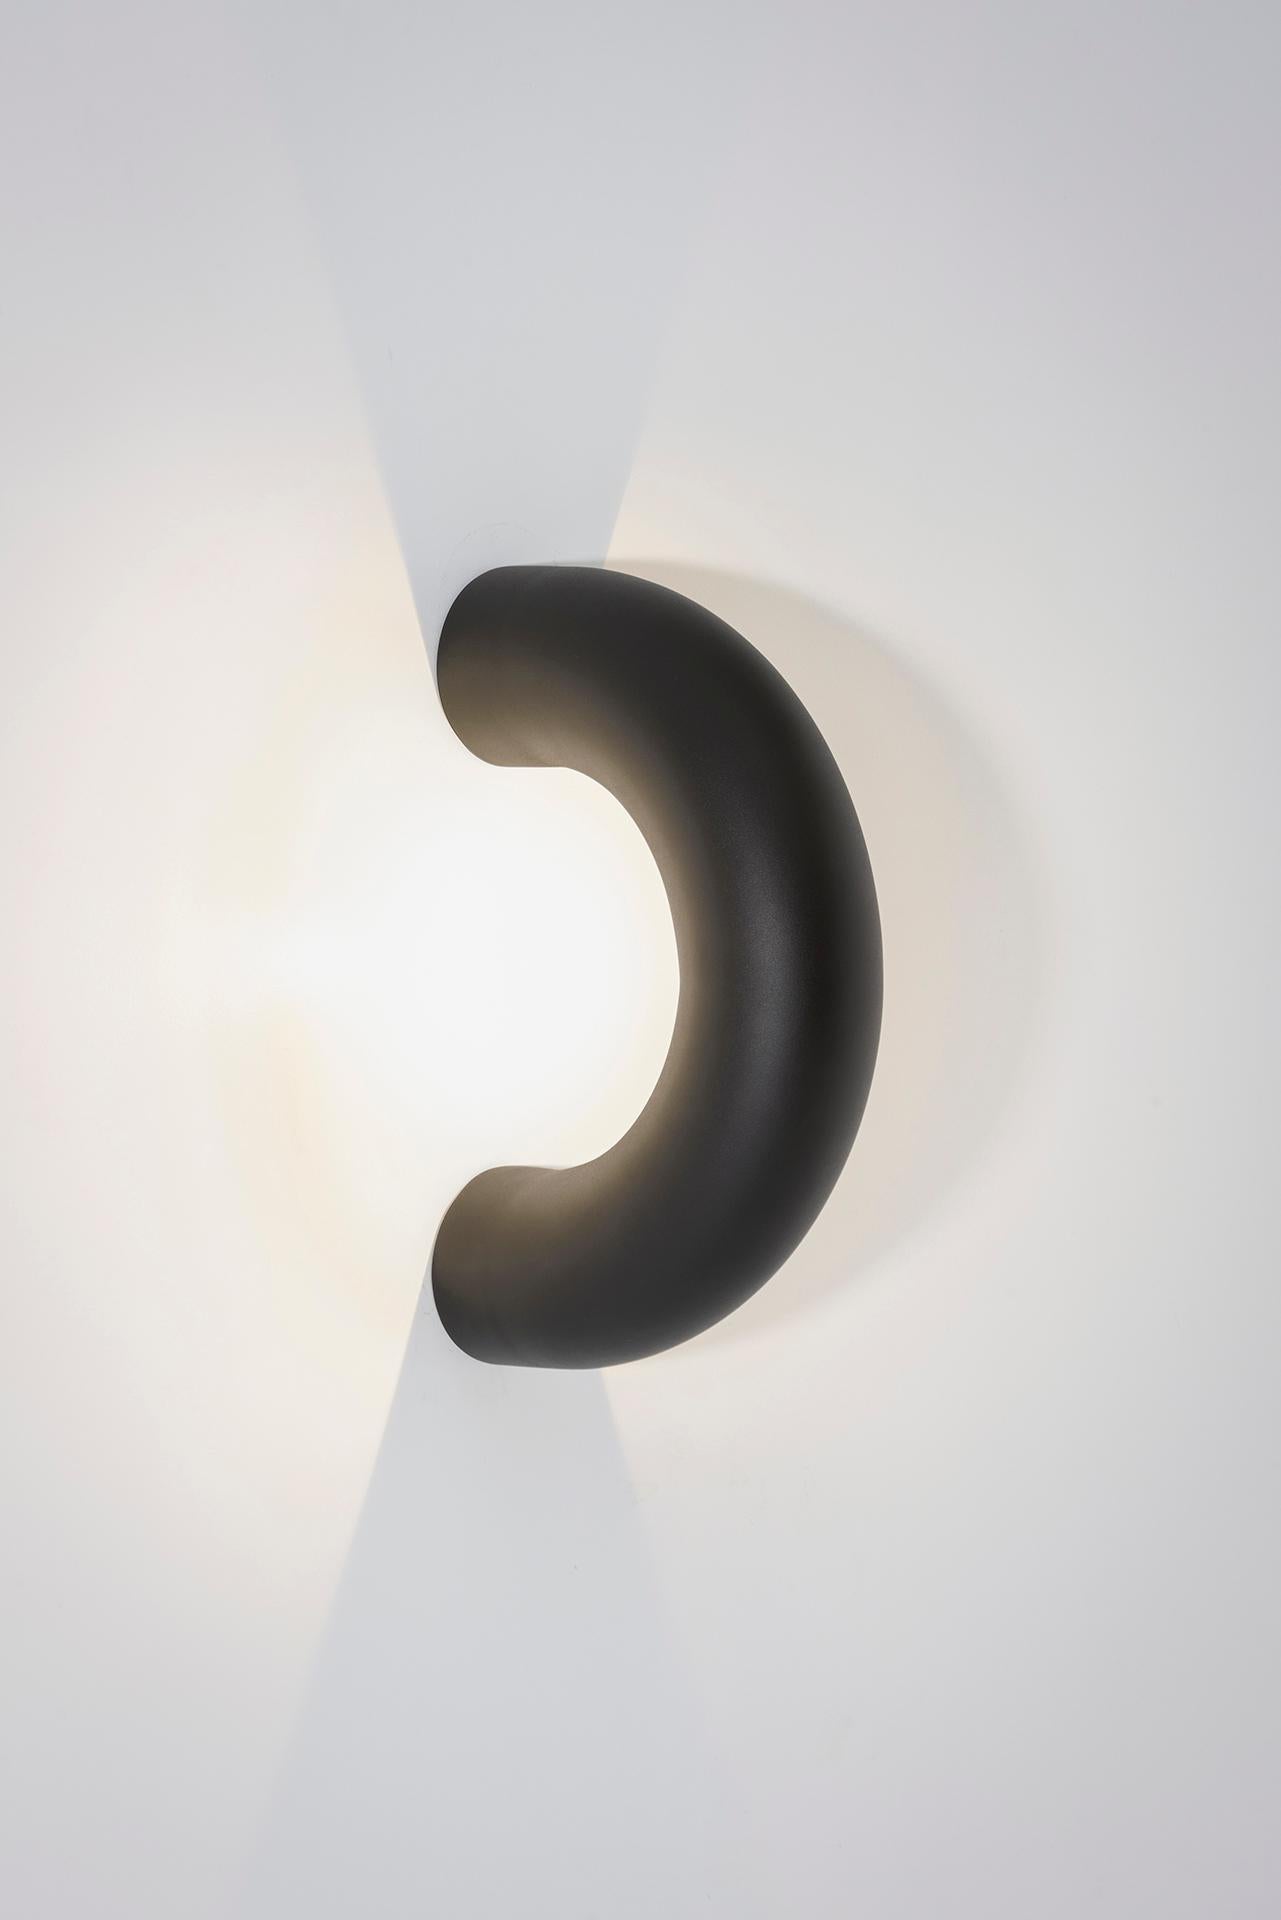 Die Arco-Lampen bestehen aus einem verlängerten Kreisausschnitt, der sich durch die Diskontinuität seiner Form auszeichnet. Die Kollektion besteht aus Lampen, die die Oberflächen, die sie berühren, zu durchdringen scheinen und sie sanft beleuchten.